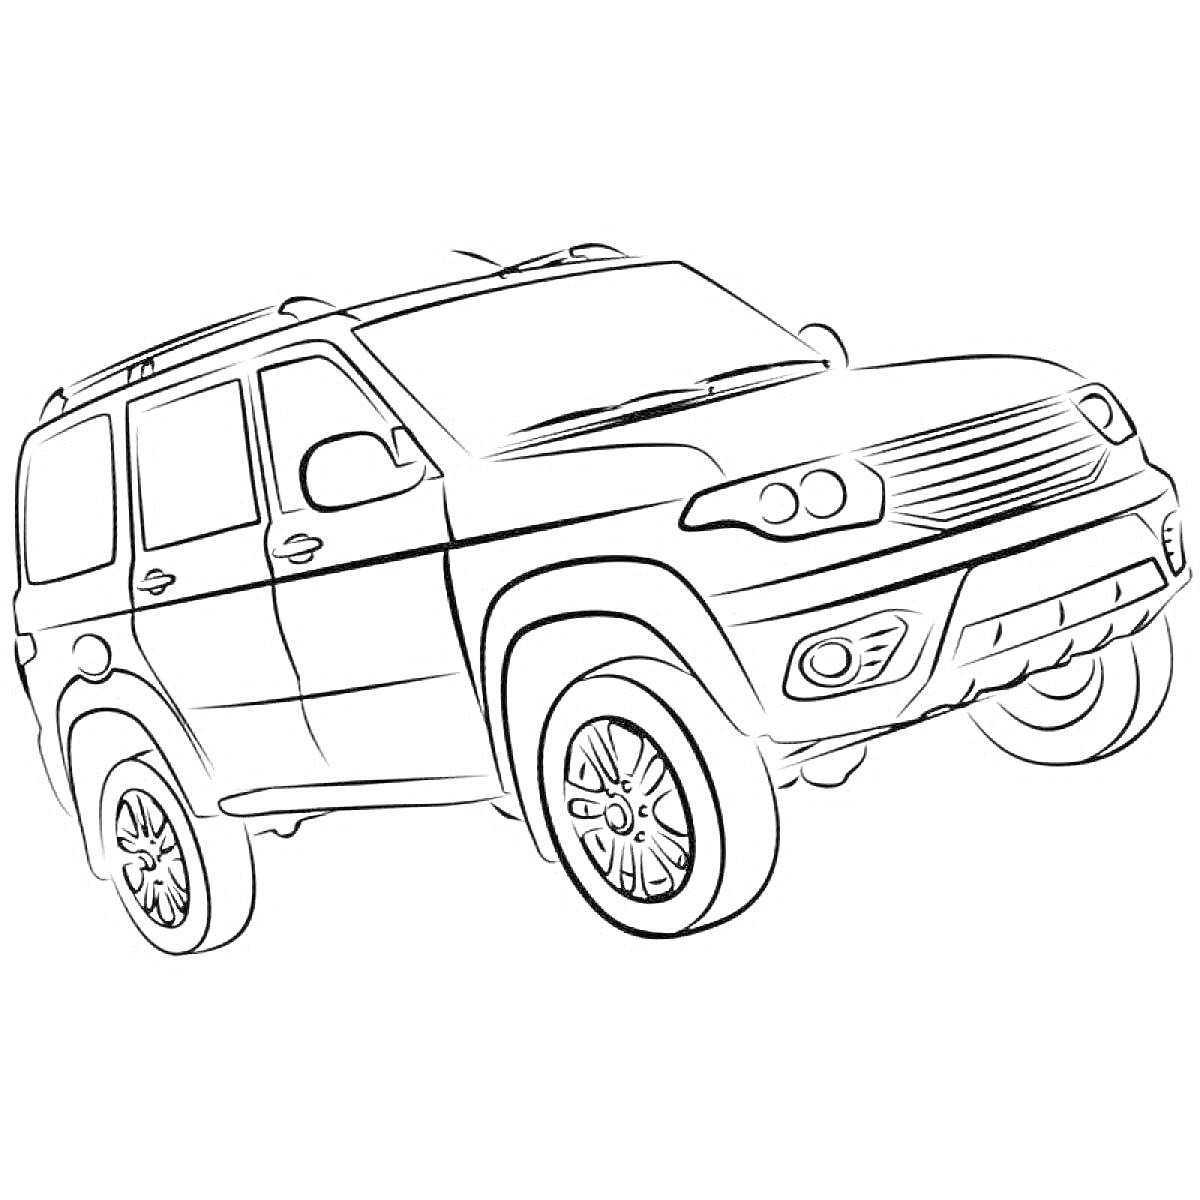 Раскраска Изображение внедорожника УАЗ с детализированными элементами кузова, колесами и фарами.